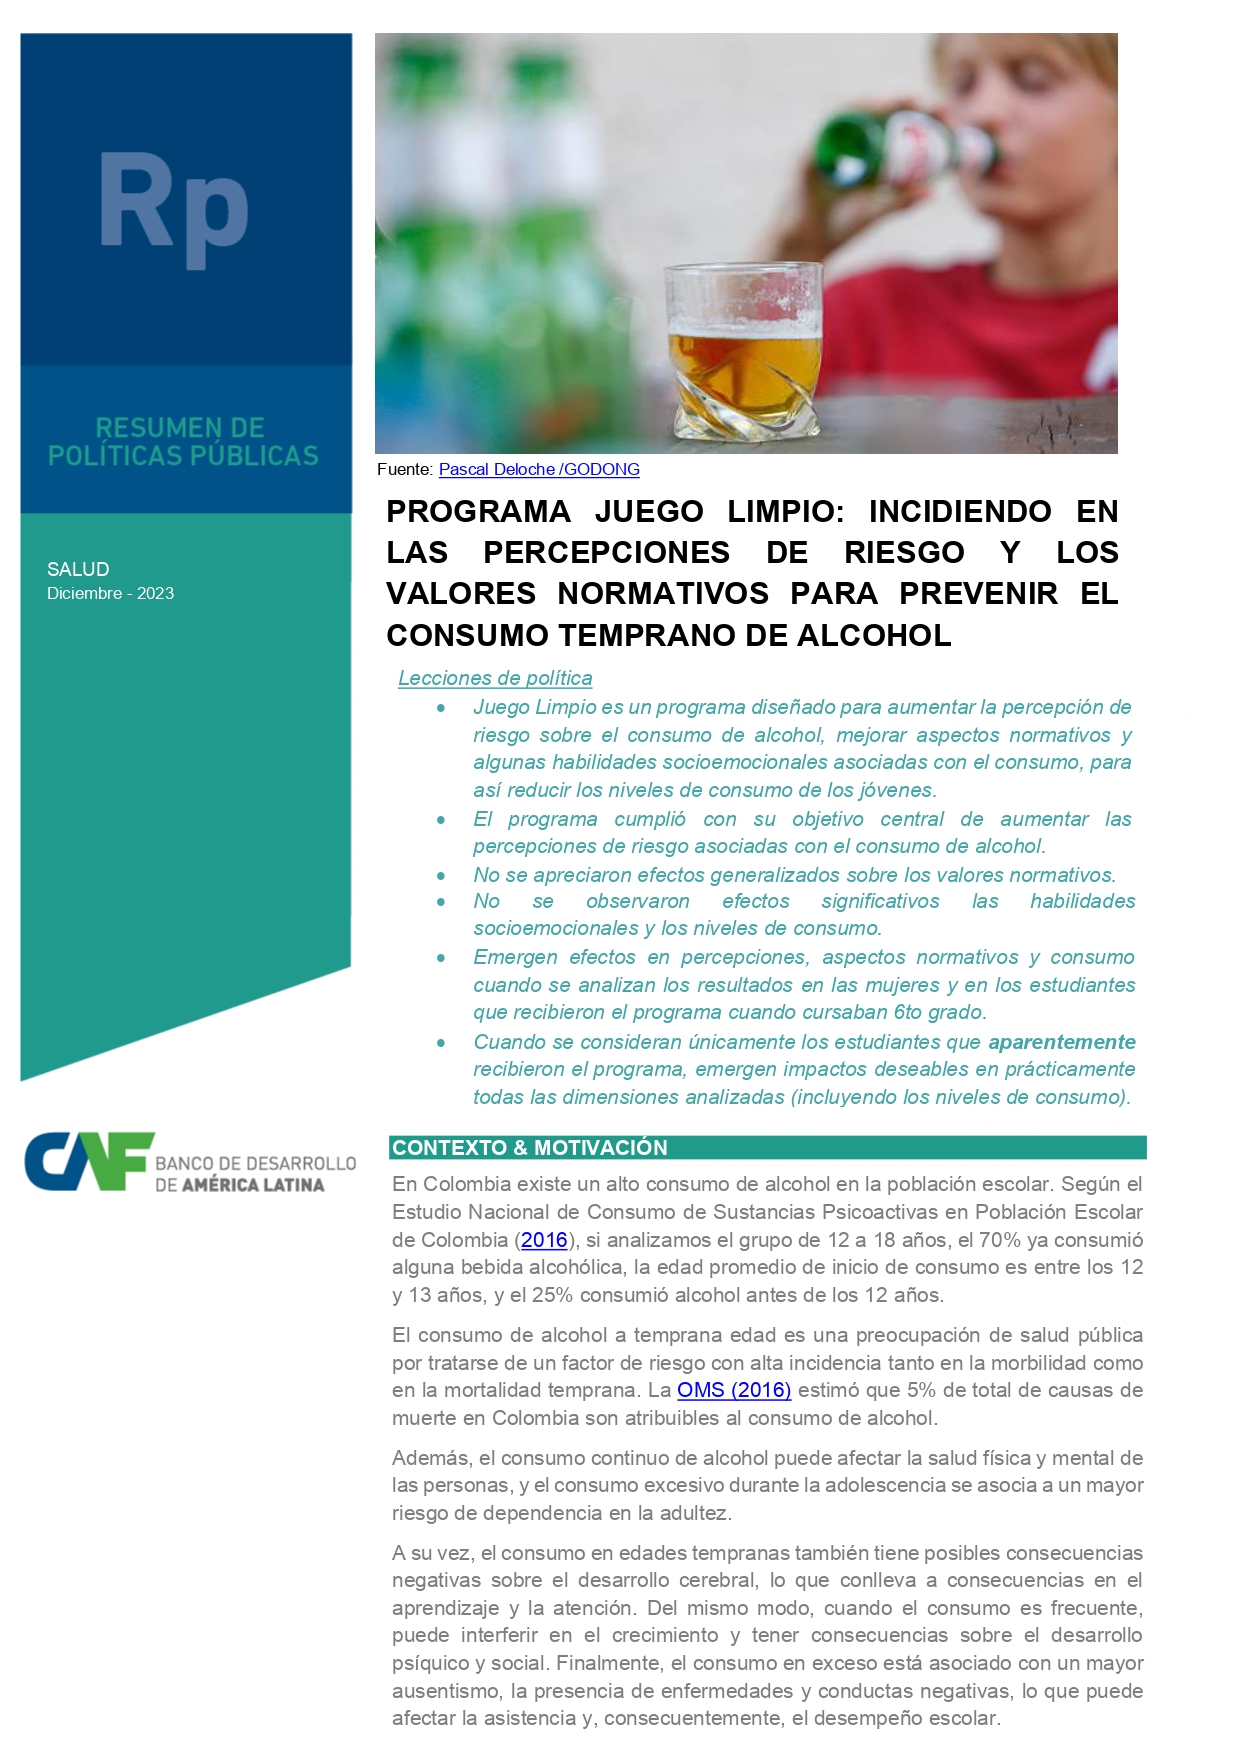 Programa Juego Limpio: incidiendo en las percepciones de riesgo y los valores normativos para prevenir el consumo temprano de alcohol